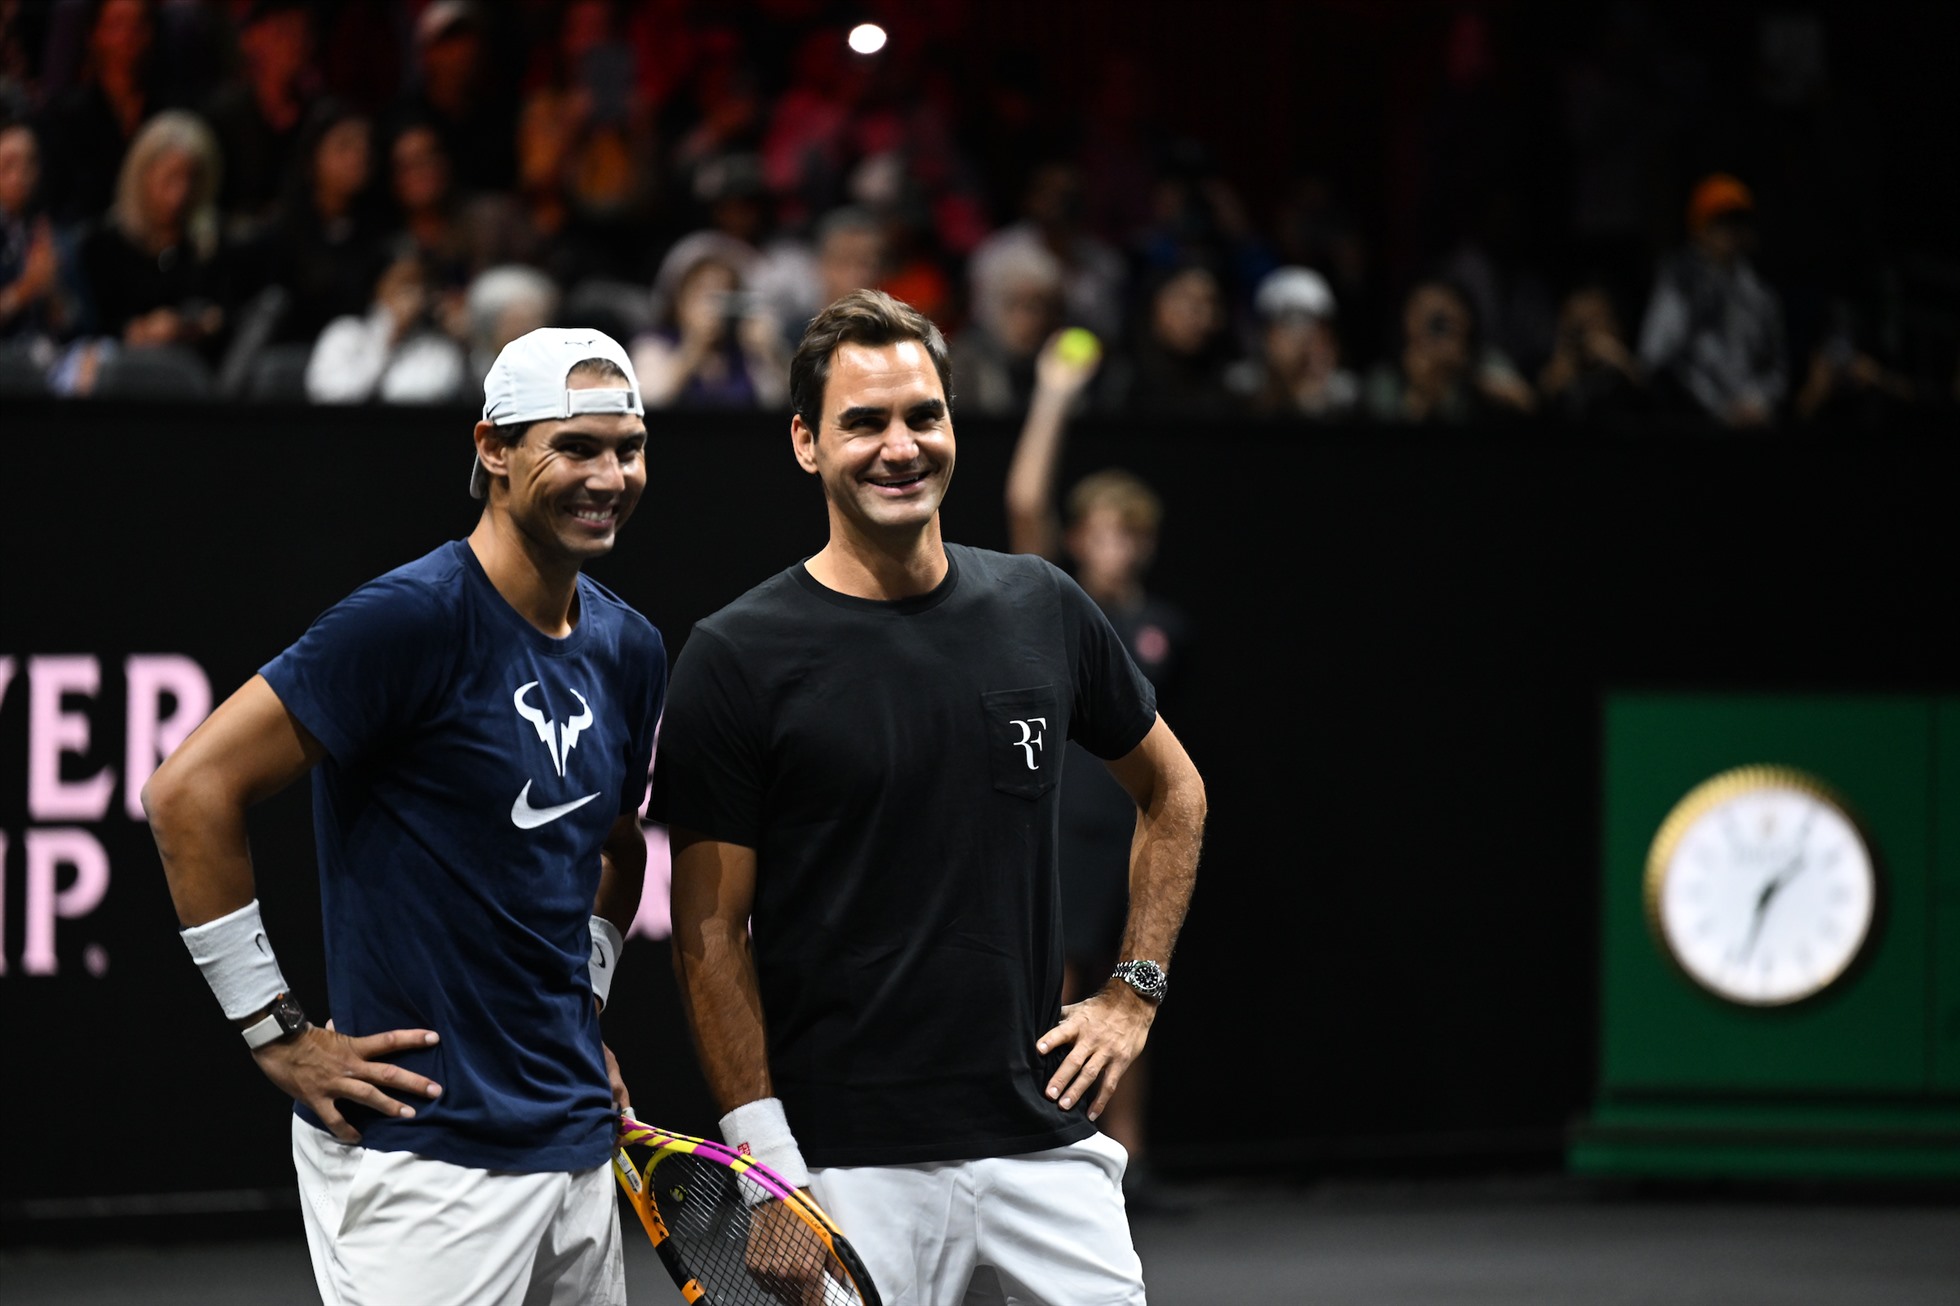 Lịch thi đấu Laver Cup 2022: Federer đánh cặp cùng Nadal